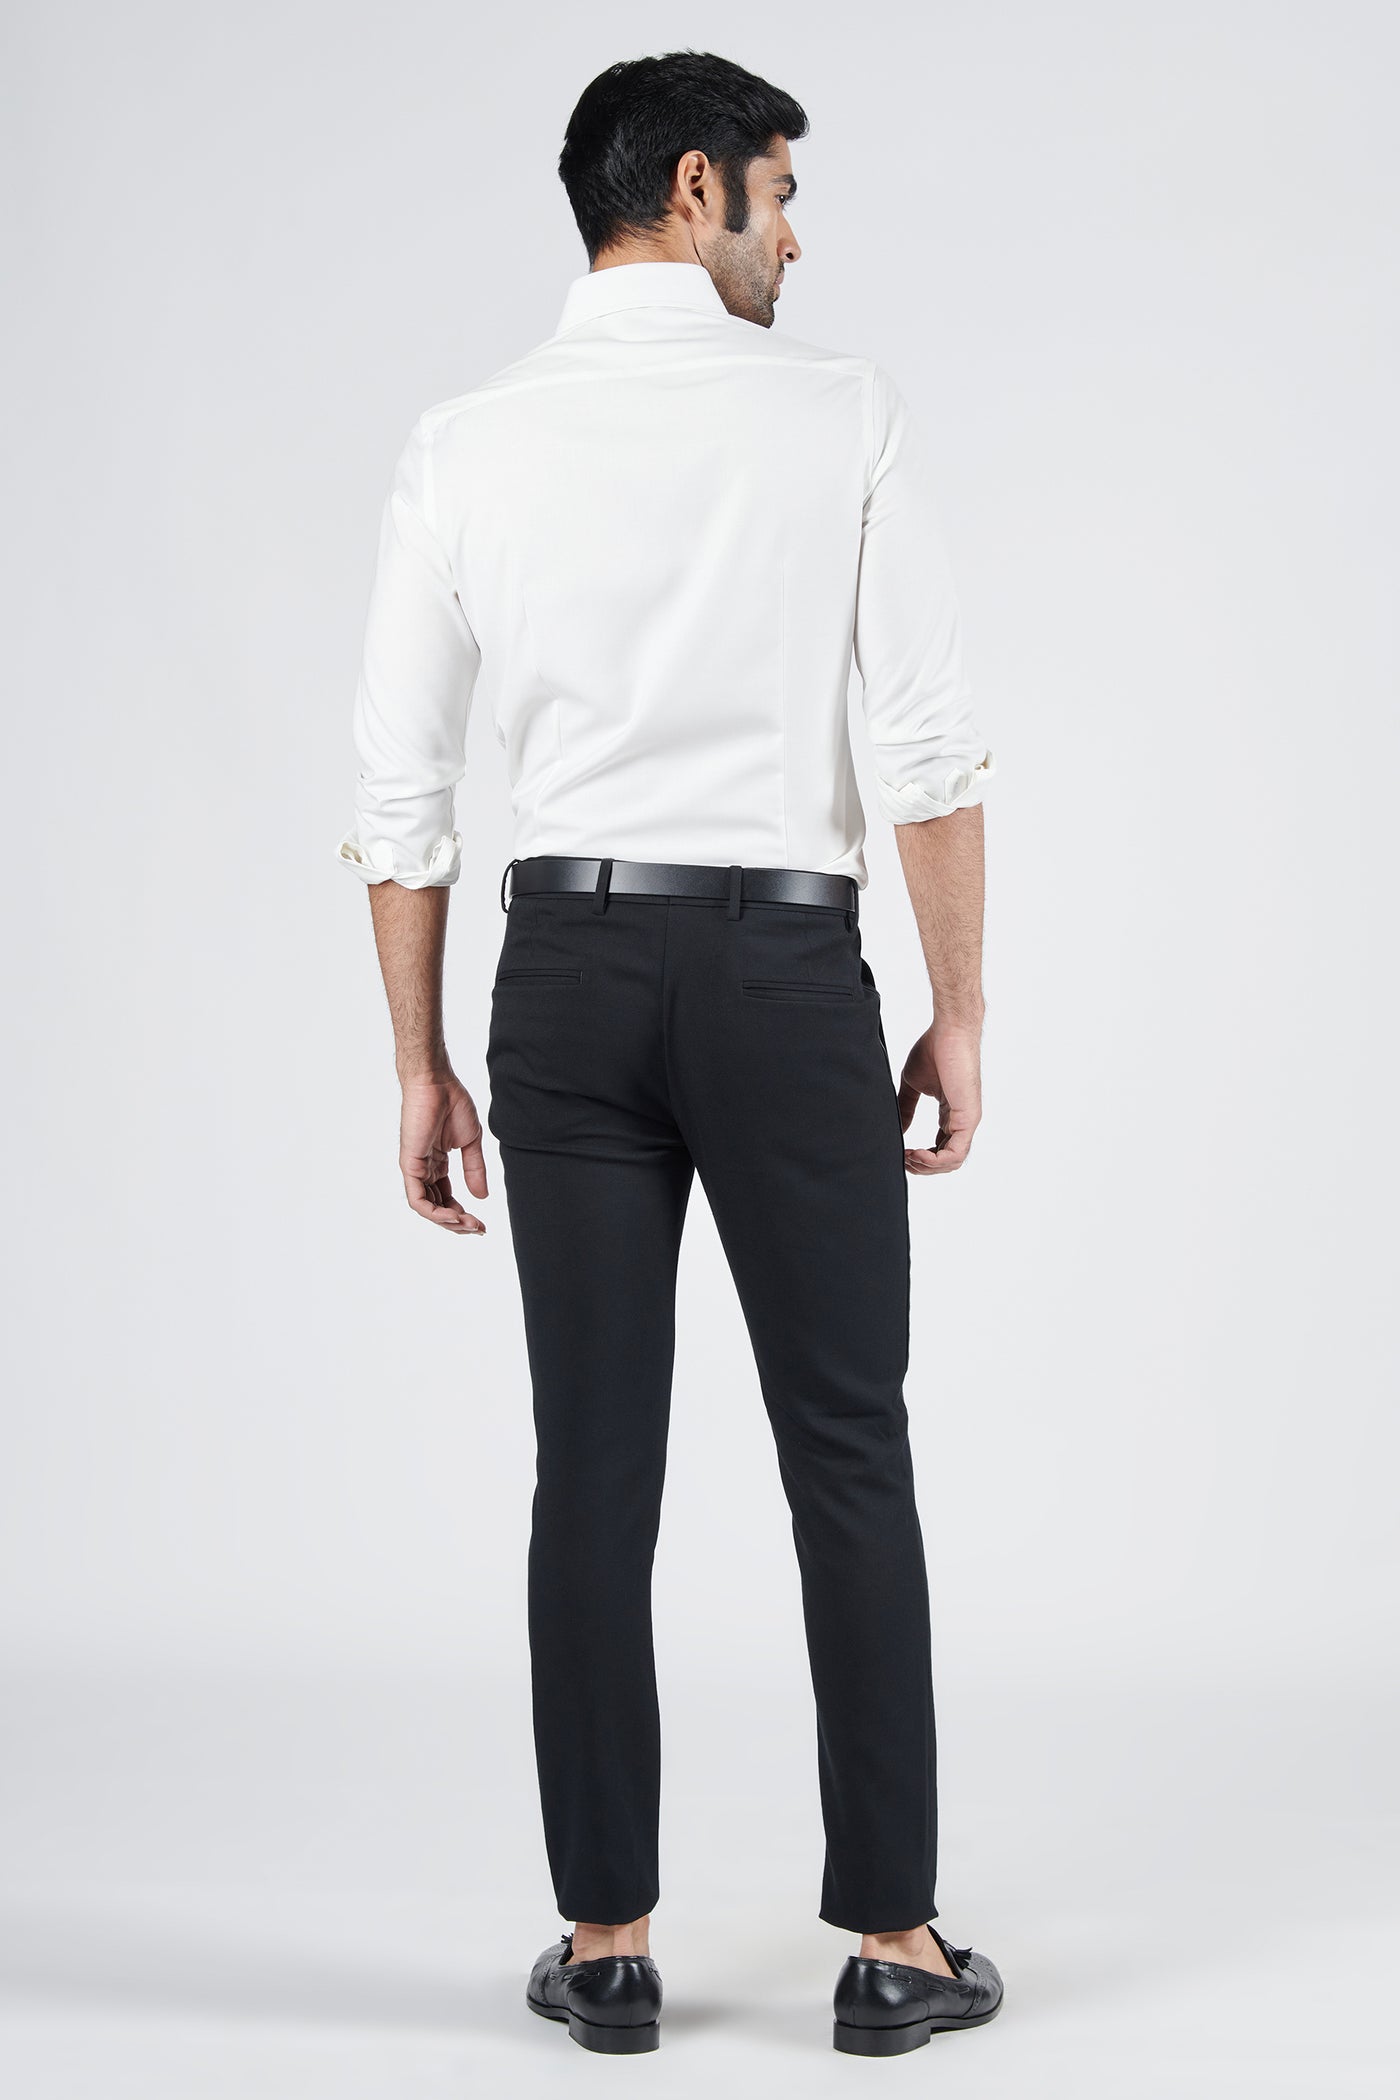 Shantanu & Nikhil Menswear Off White Shirt with Tucks Details indian designer wear online shopping melange singapore